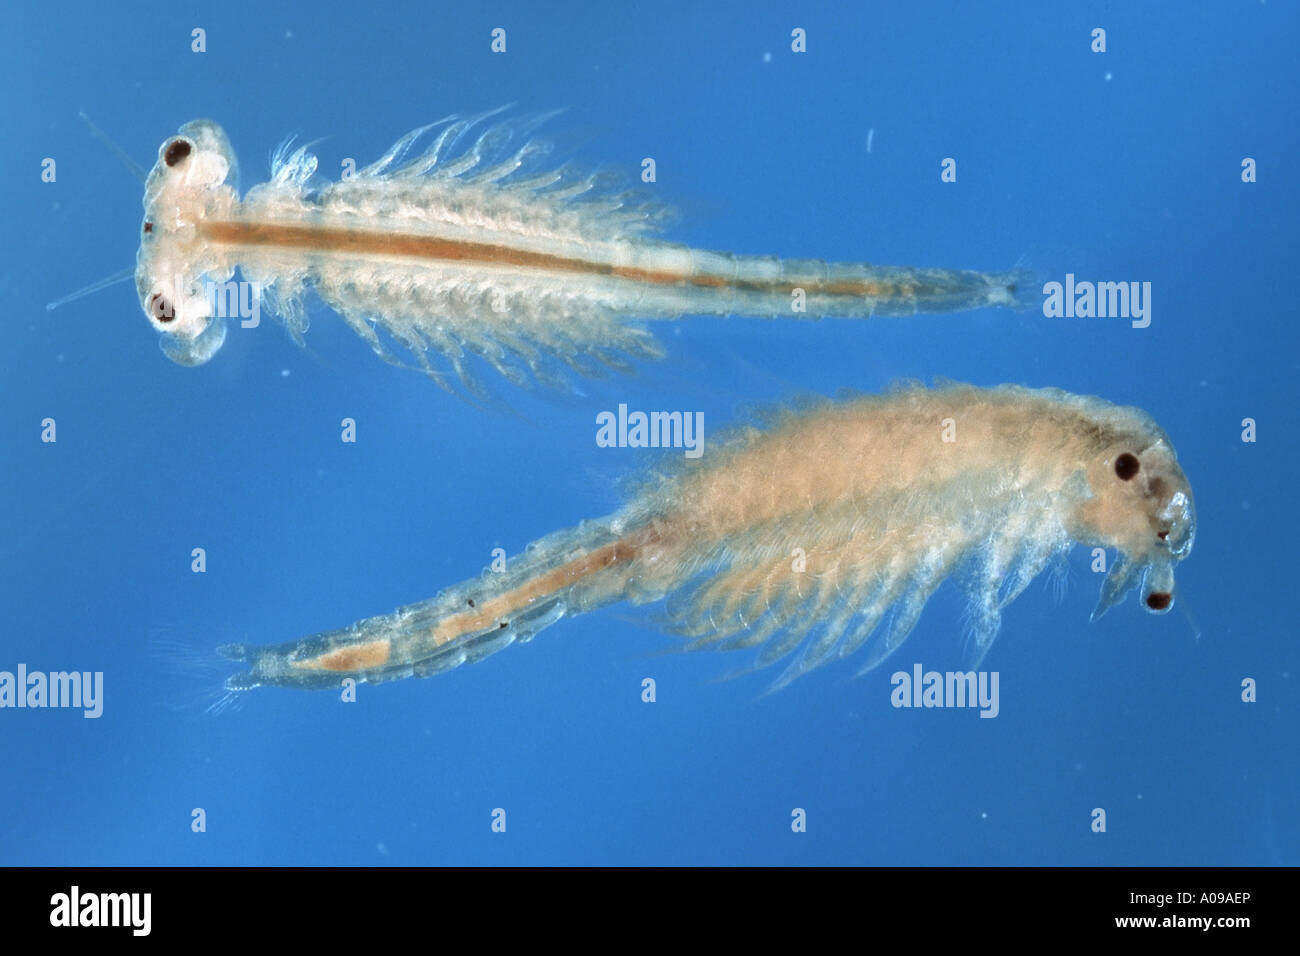 https://c8.alamy.com/comp/A09AEP/brine-shrimp-artemia-salina-A09AEP.jpg